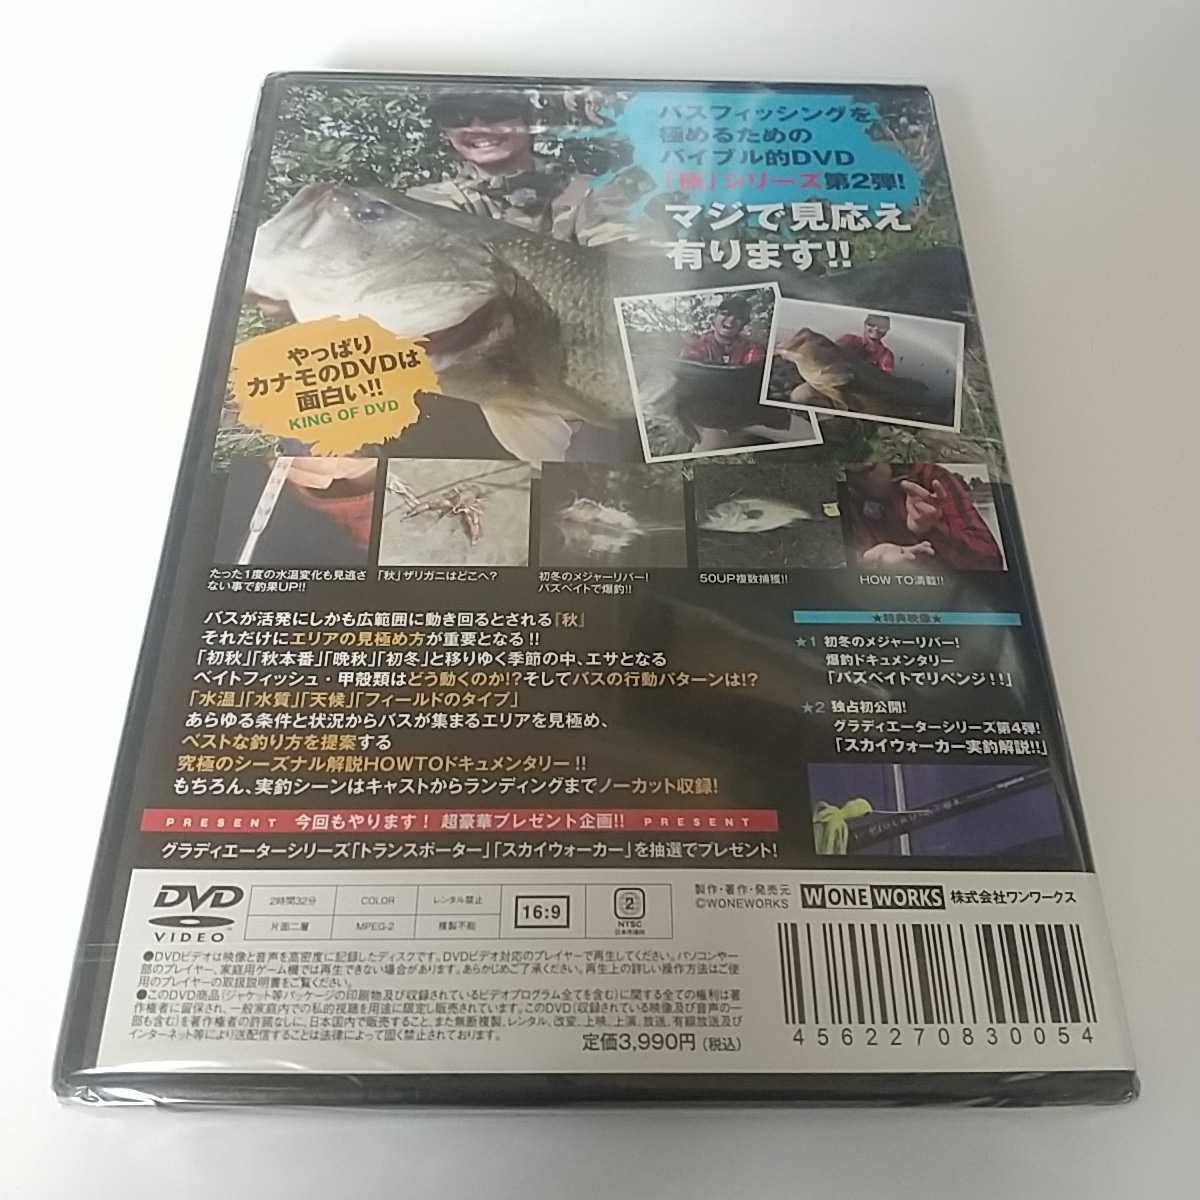 X бесплатная доставка новый товар нераспечатанный золотой лес ..KANAMO STYLE высшее 1st kana mo стиль DVD Raid Japan 